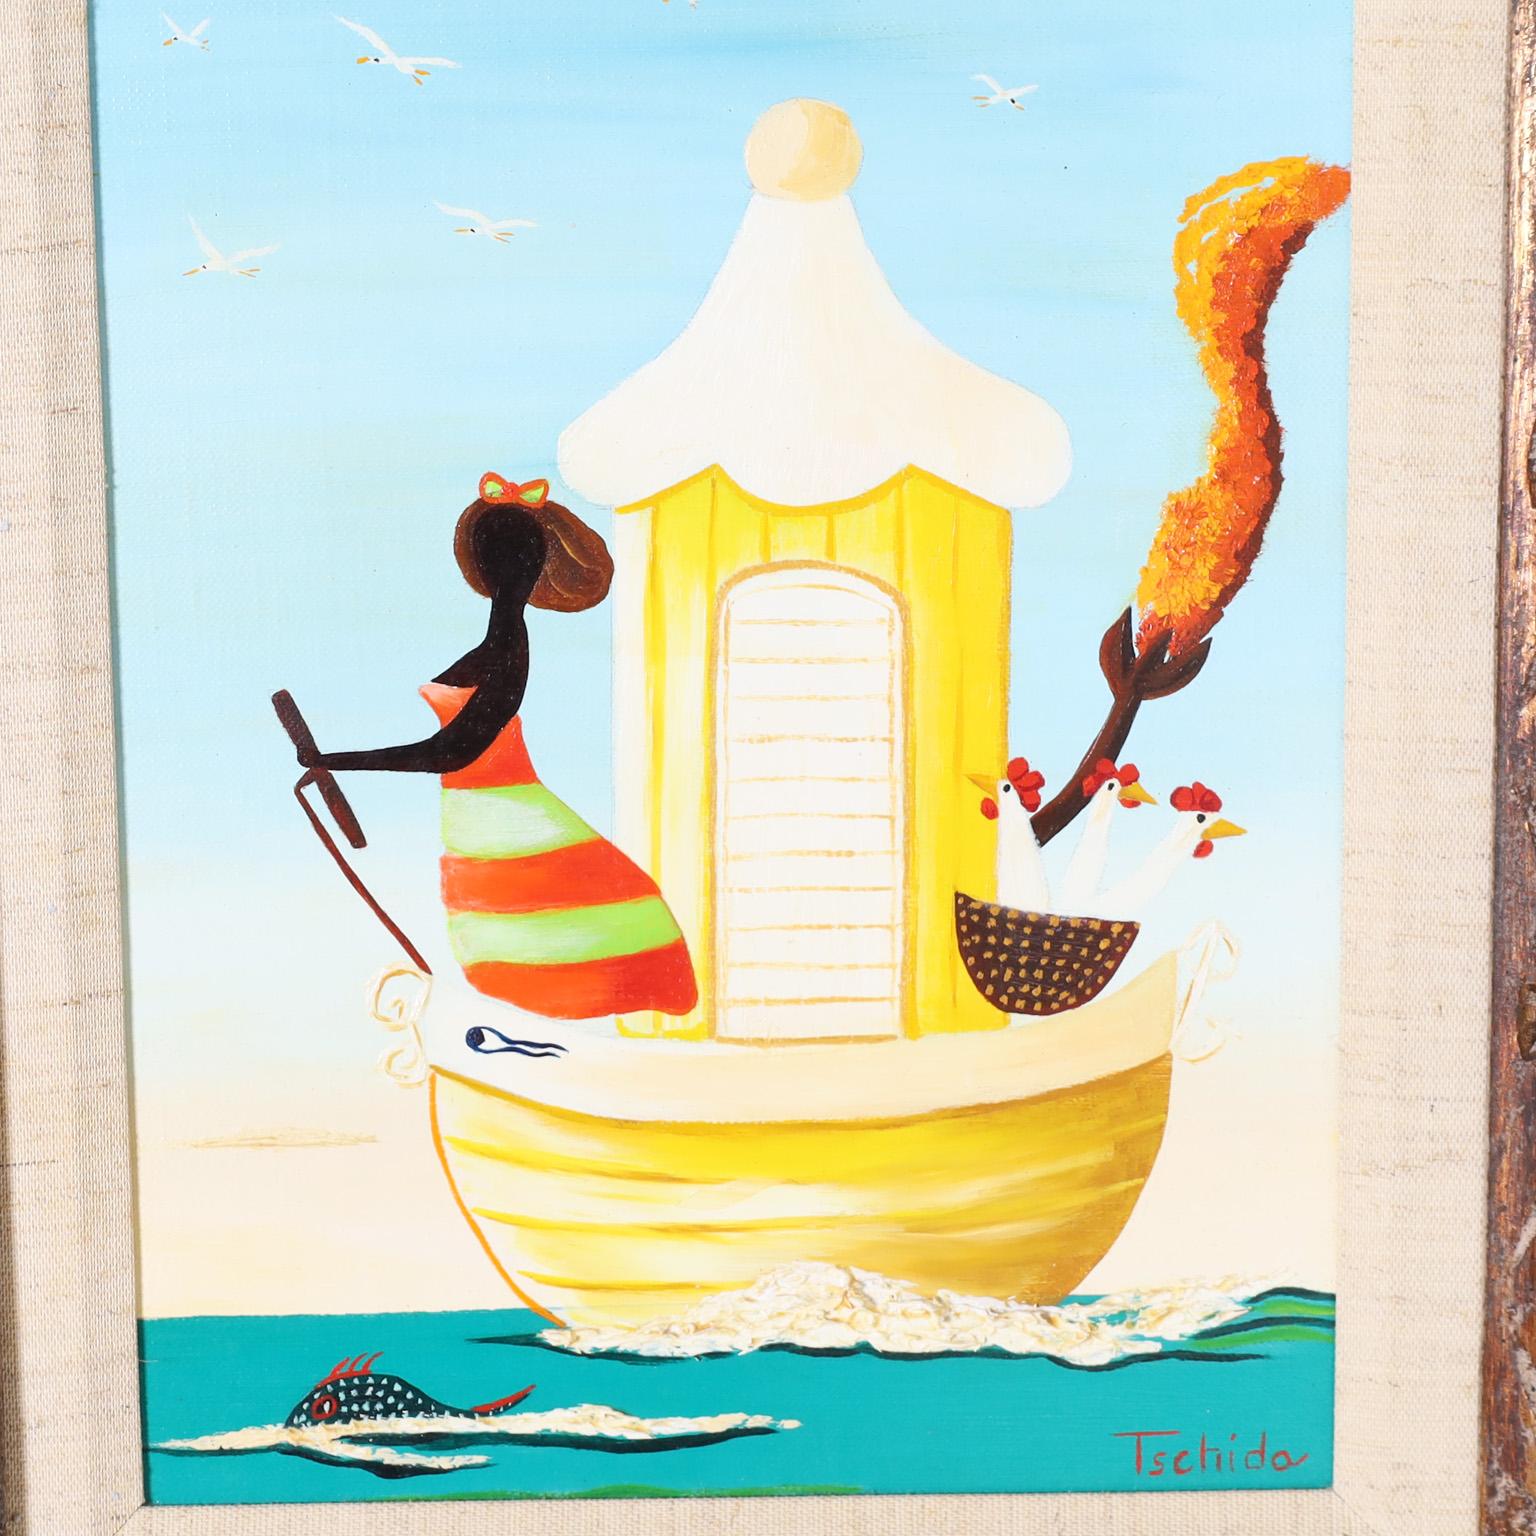 Peinture acrylique fantaisiste sur toile représentant un bateau avec une femme et trois poulets dans un panier, exécutée dans un délicieux style naïf, rappelant Orville Bulman. Signé Tschida, titré 